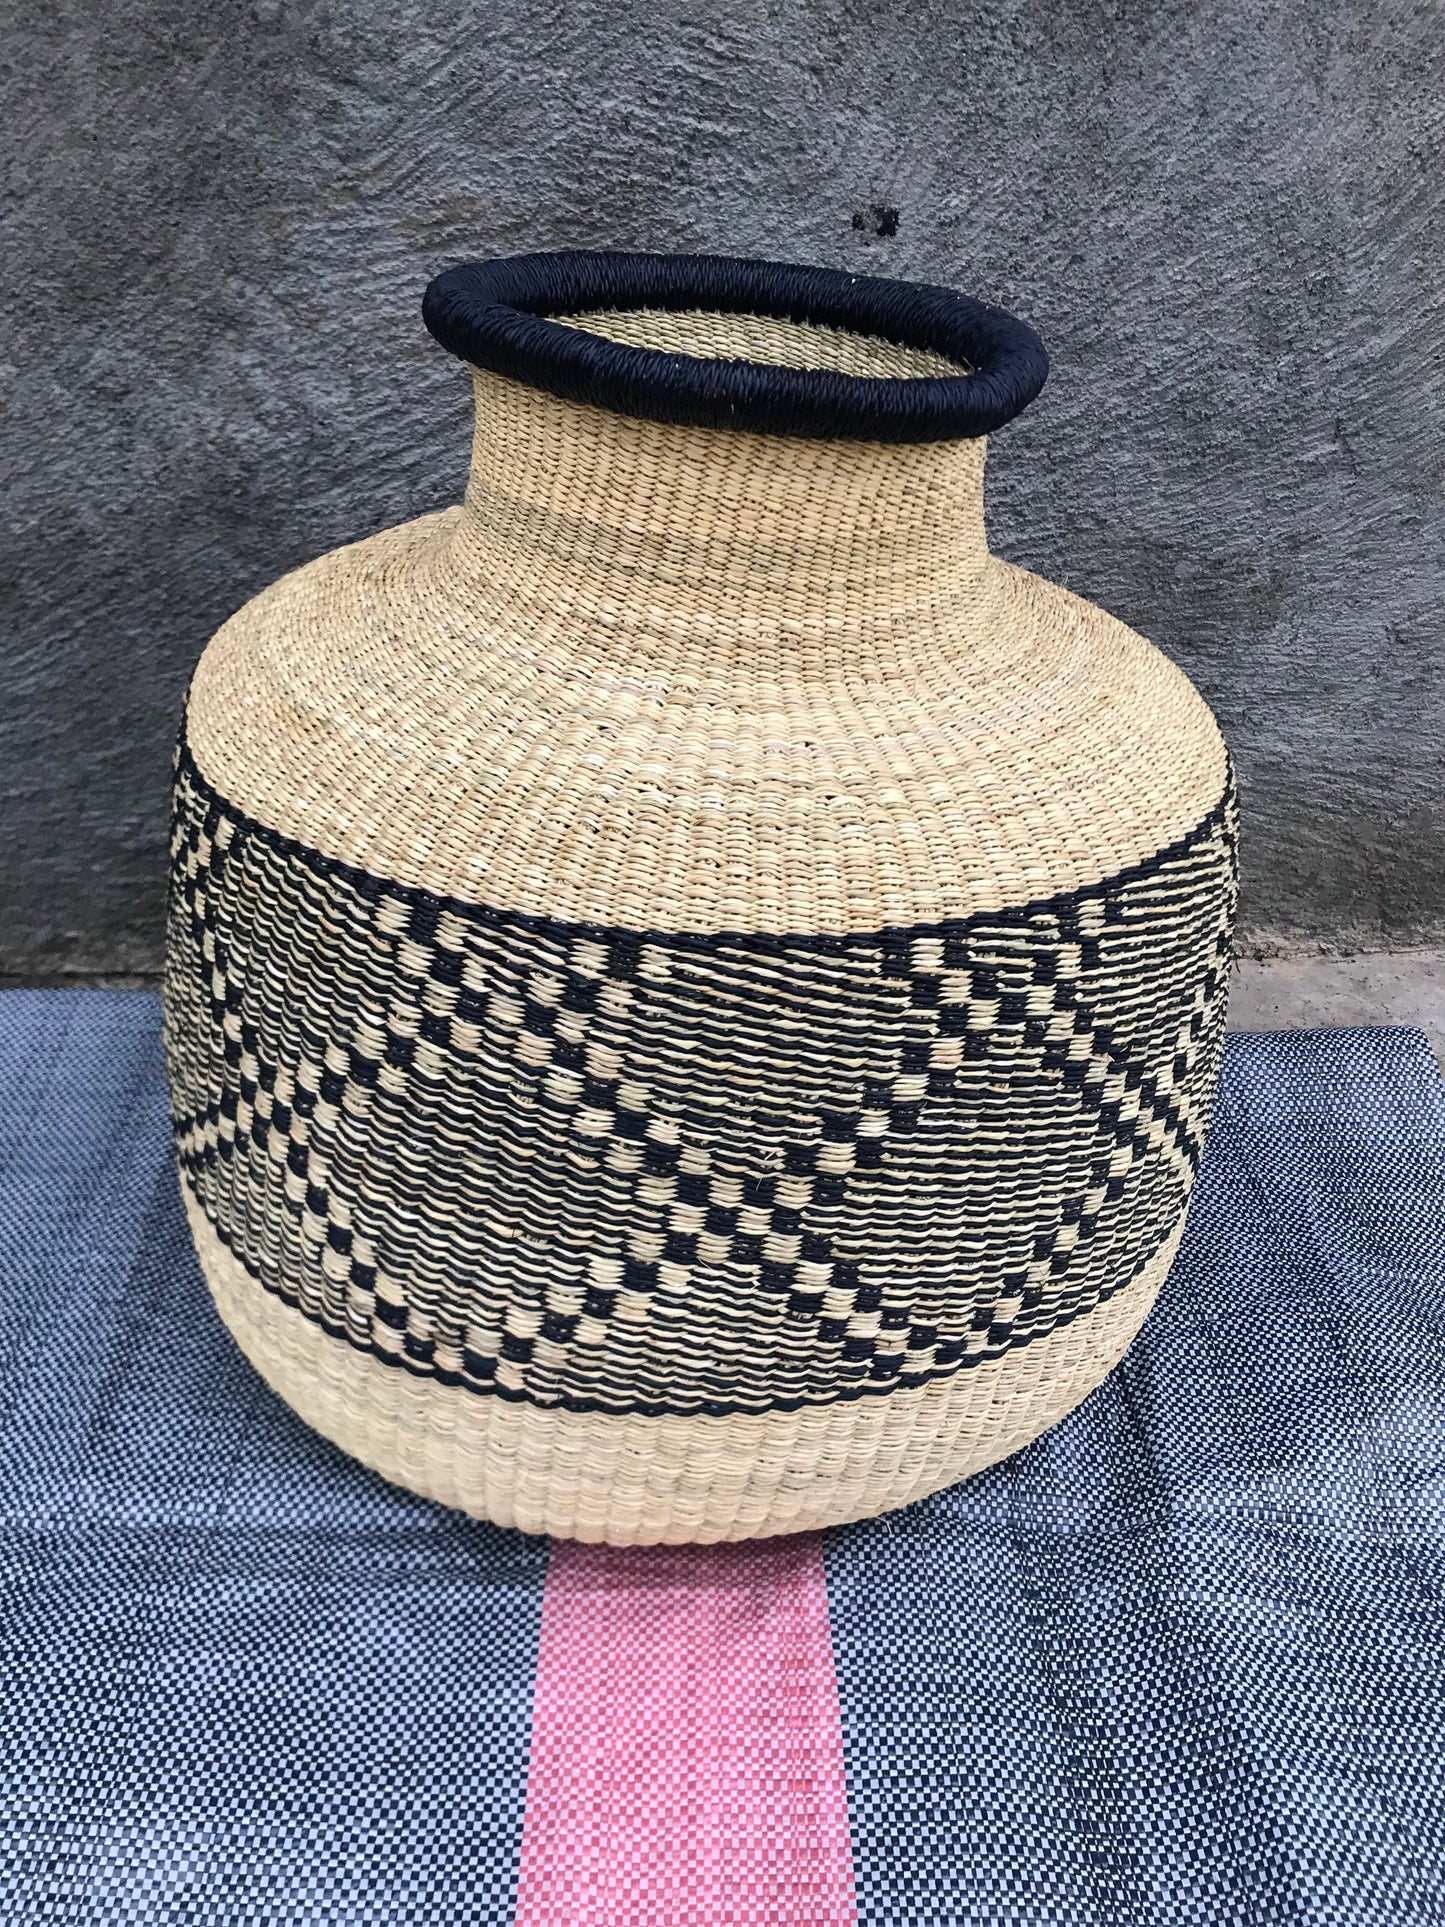 Bolga Basket, African Basket, Handmade Basket, Ghana Basket, Gift for her, Personalized gift, Pot Basket 002